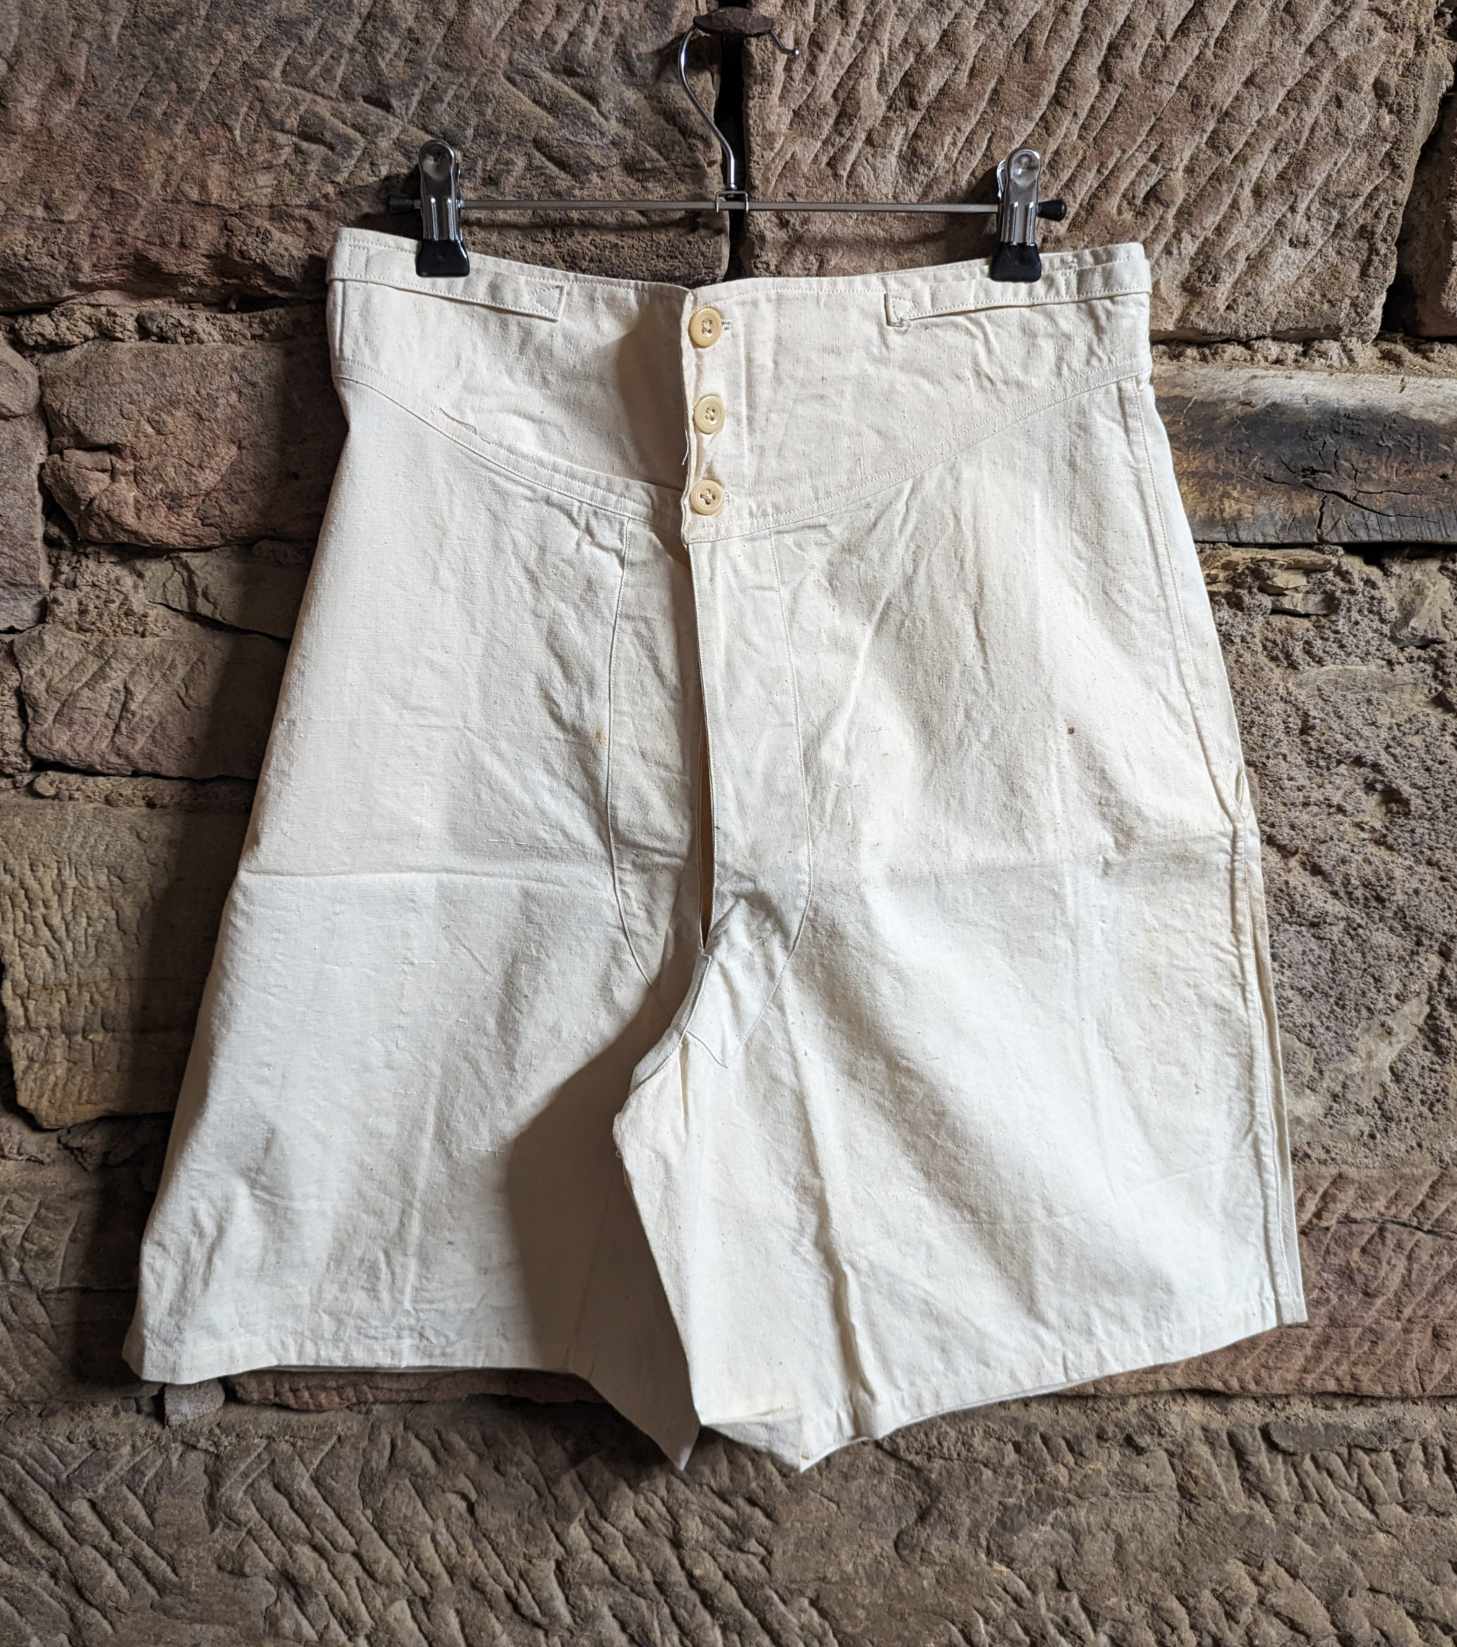 militaria : Caleçon court France 1940  / ww2 Men's short underpants